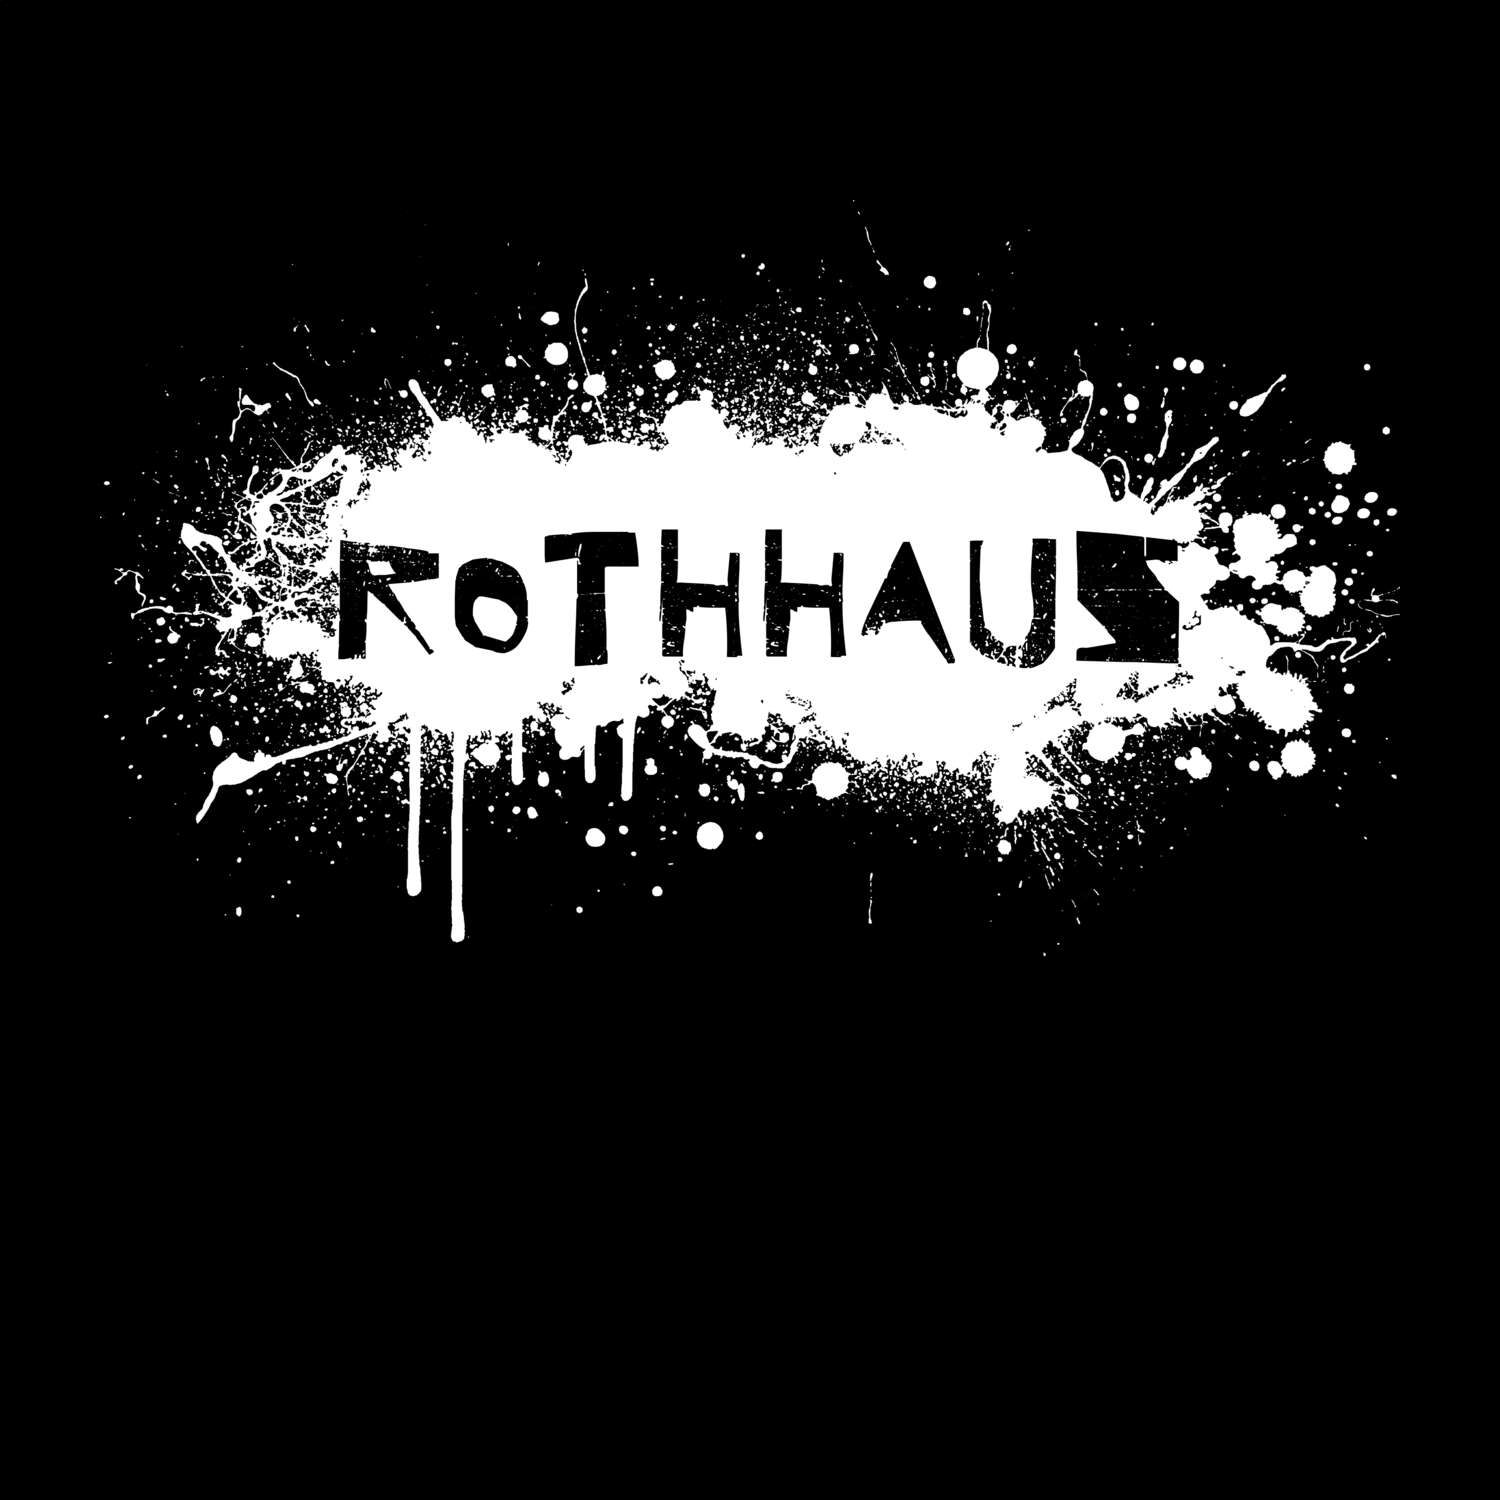 Rothhaus T-Shirt »Paint Splash Punk«